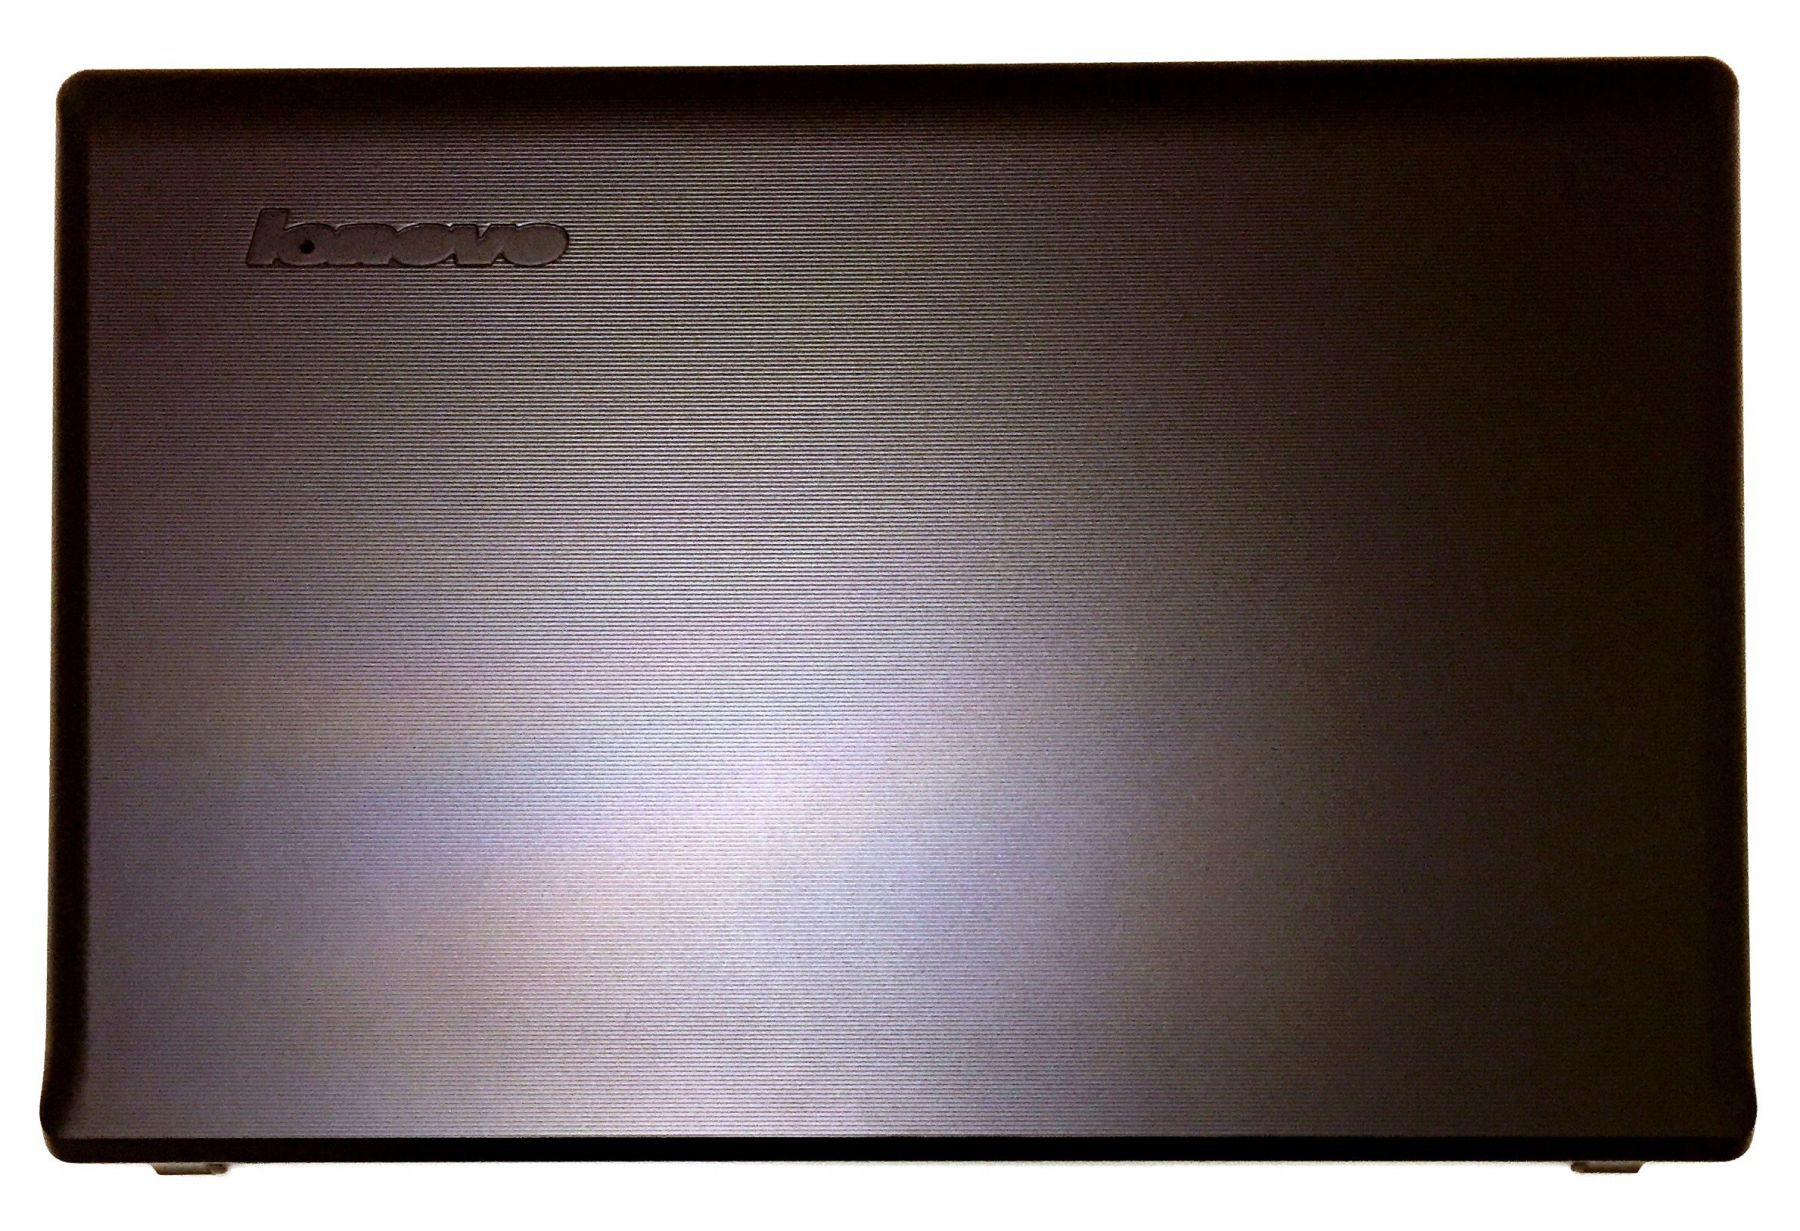 Динамики ноутбук леново. Ноутбук Lenovo g570. Верхняя крышка для ноутбука леново в570е. Lenovo g575. Леново титановый корпус ноутбук 14 l.QV.